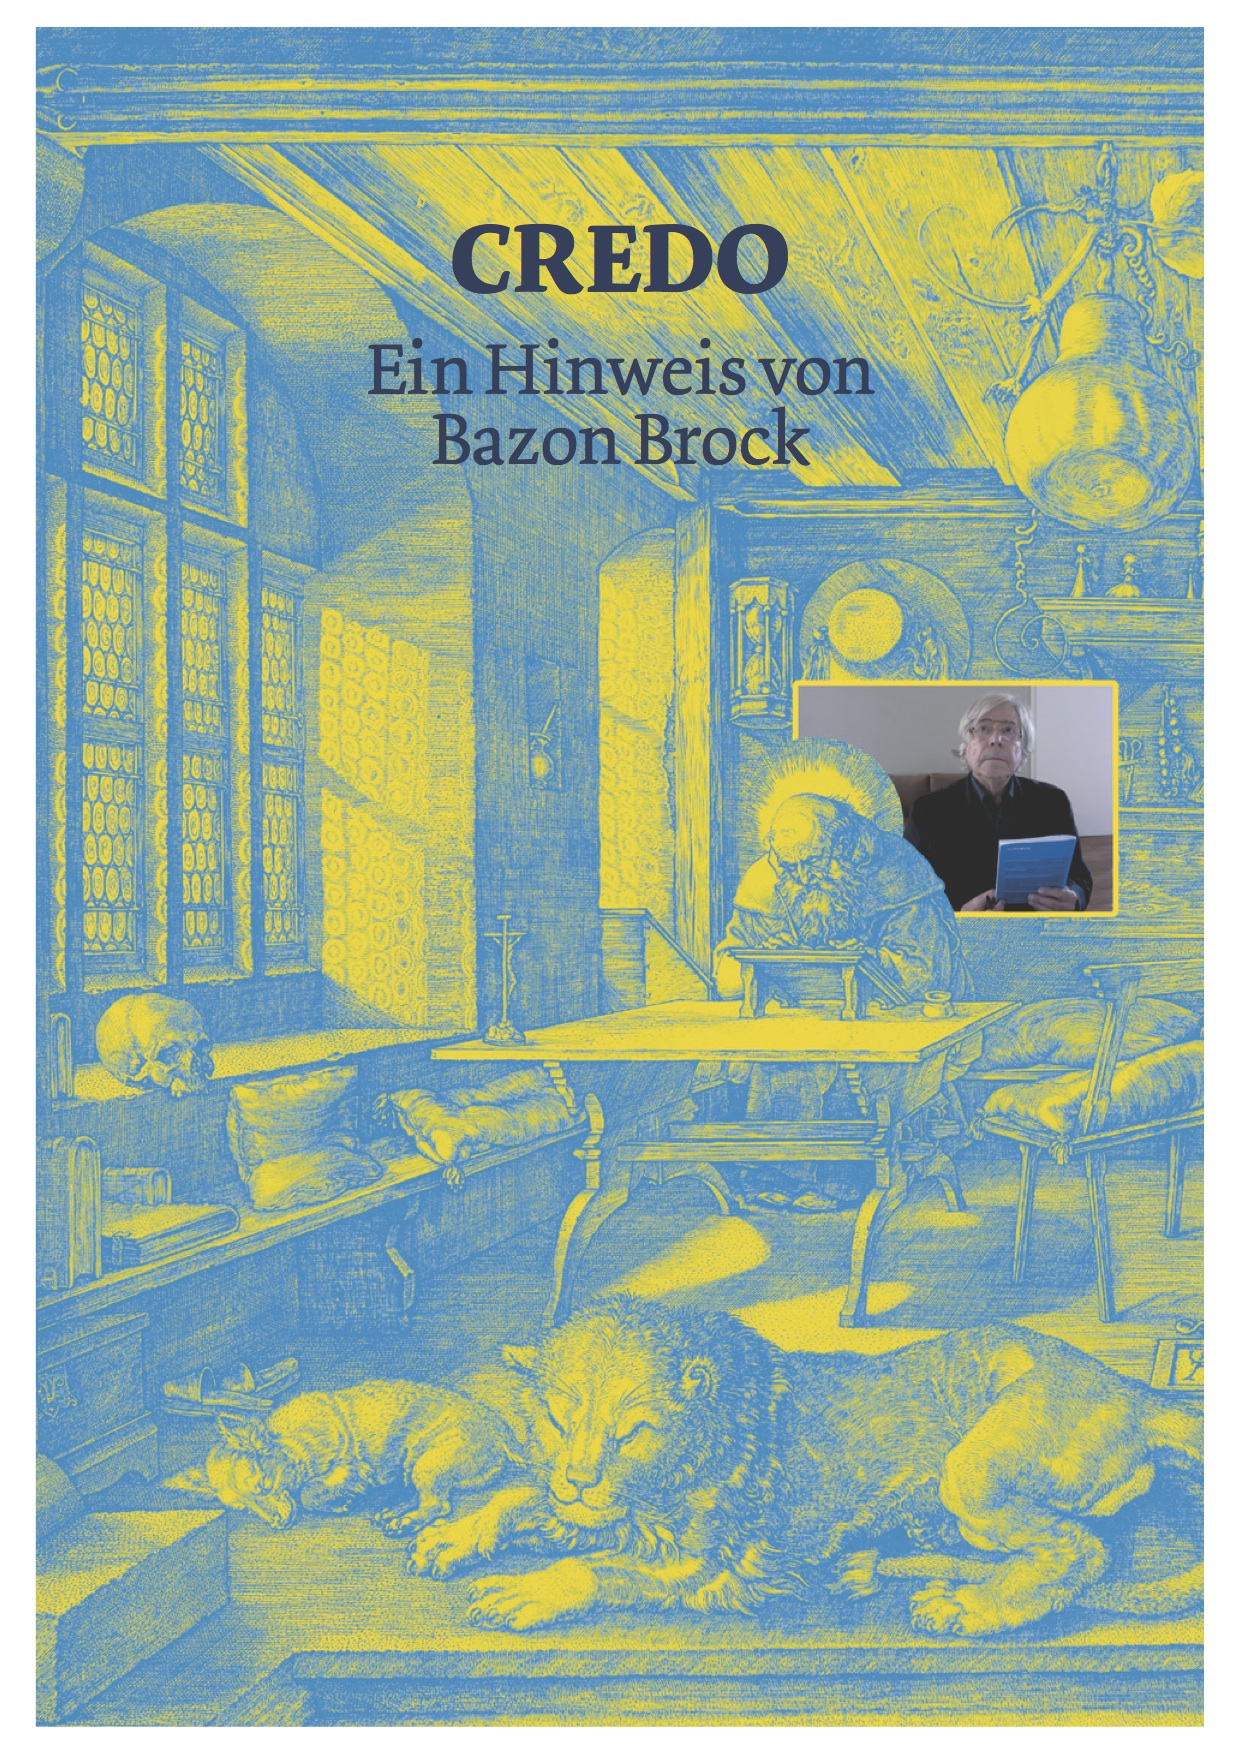 CREDO, Bild: Ein Hinweis von Bazon Brock. Paderborn, 2013..